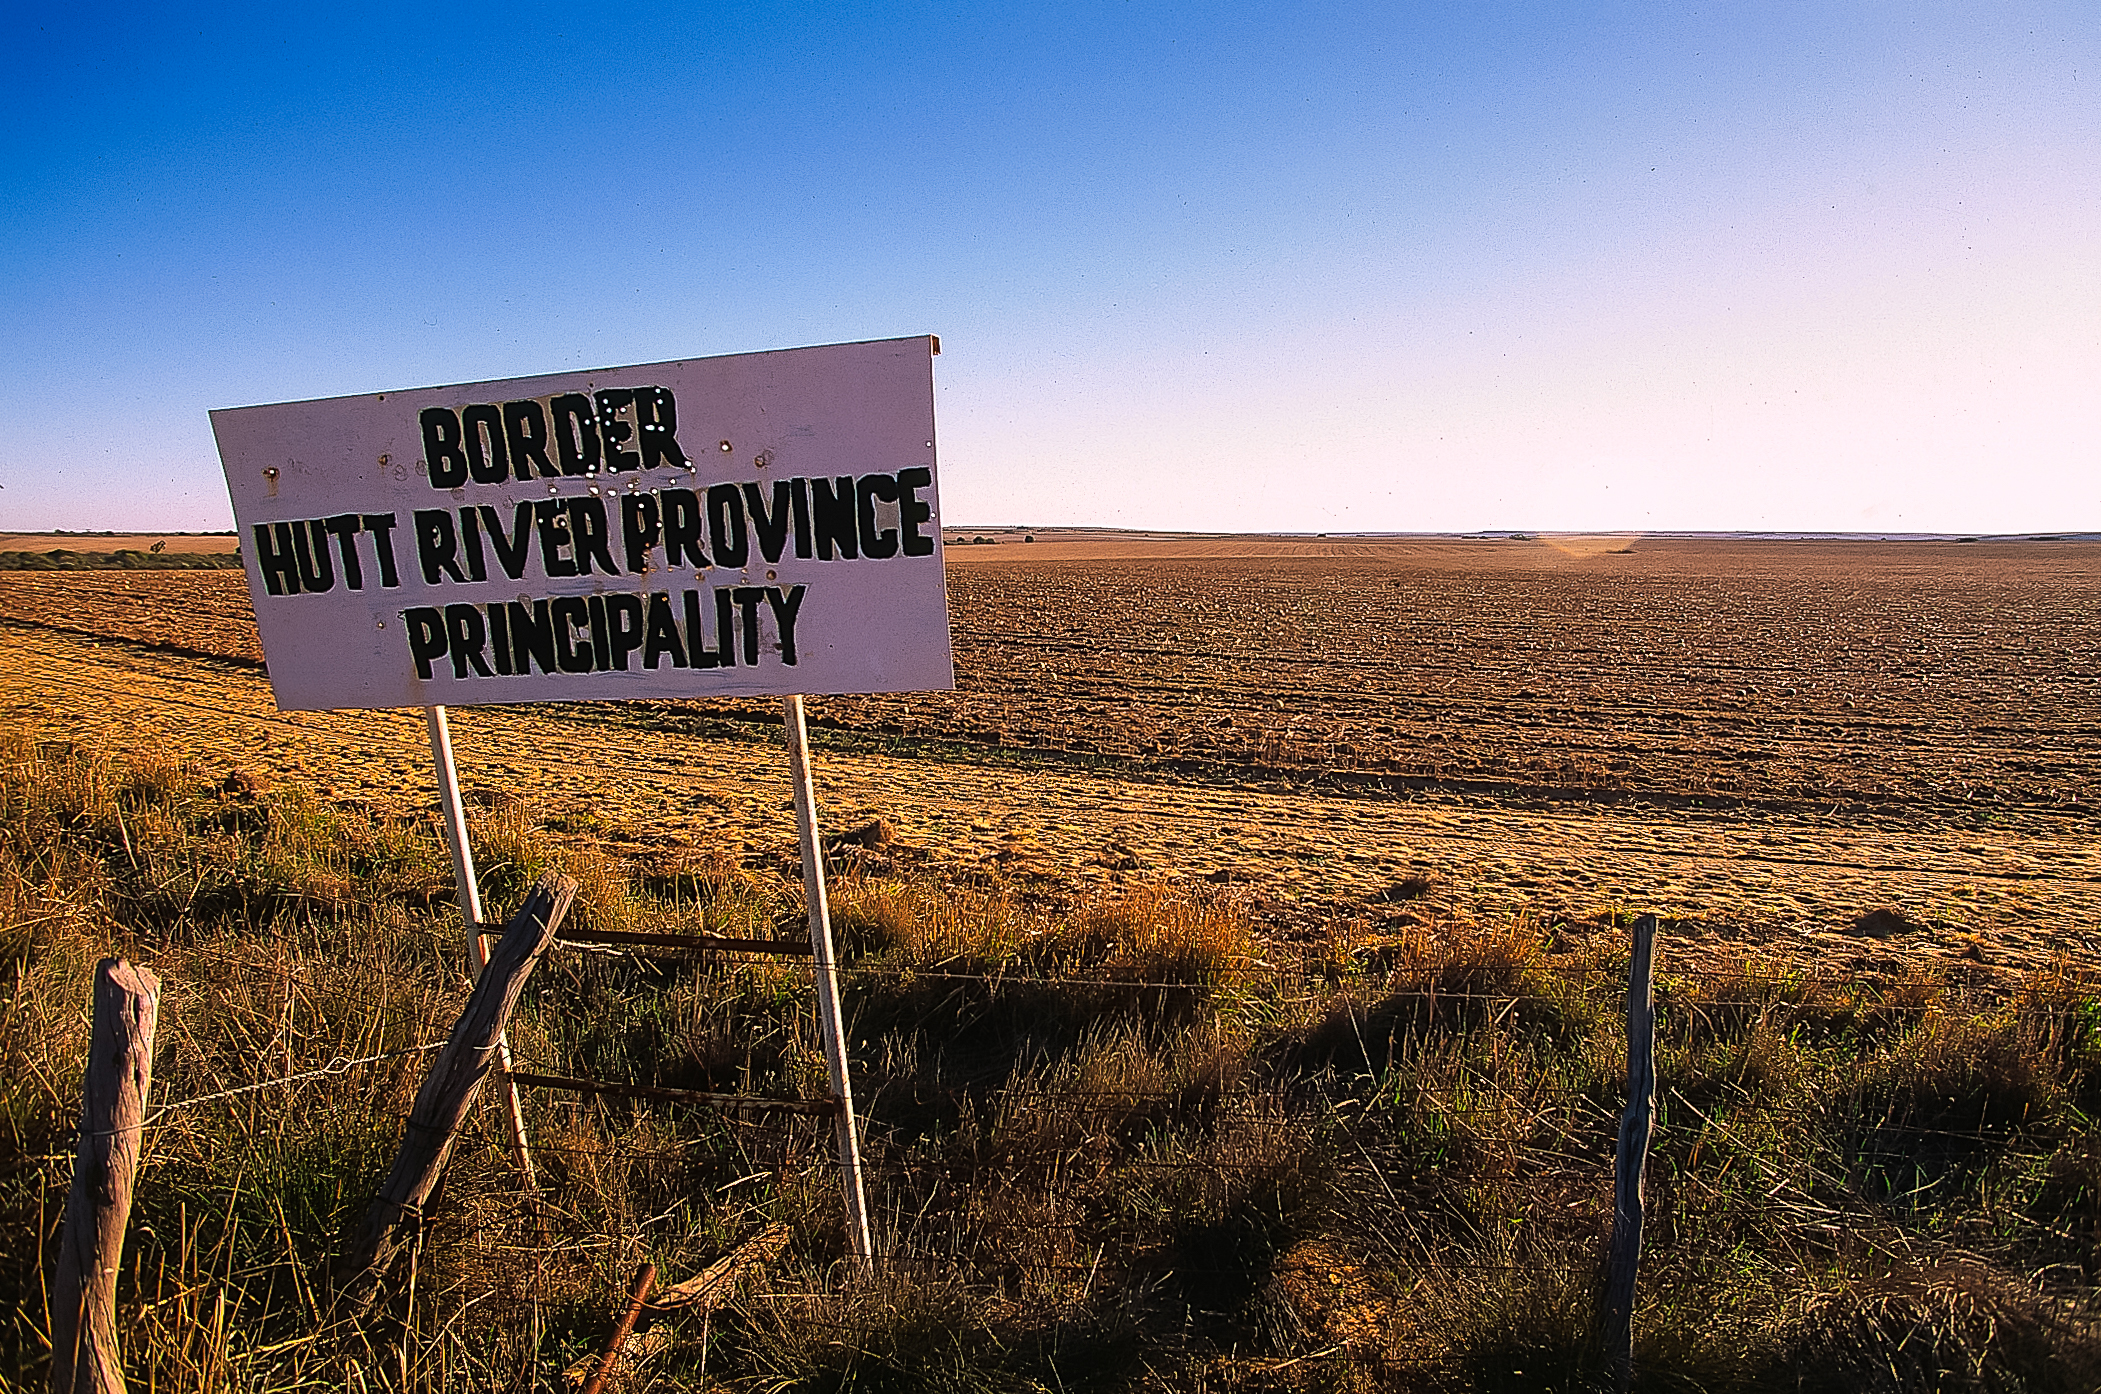 Il confine della Hutt Province. Da notare i fori dei proiettili su cartello. Australia (WA)